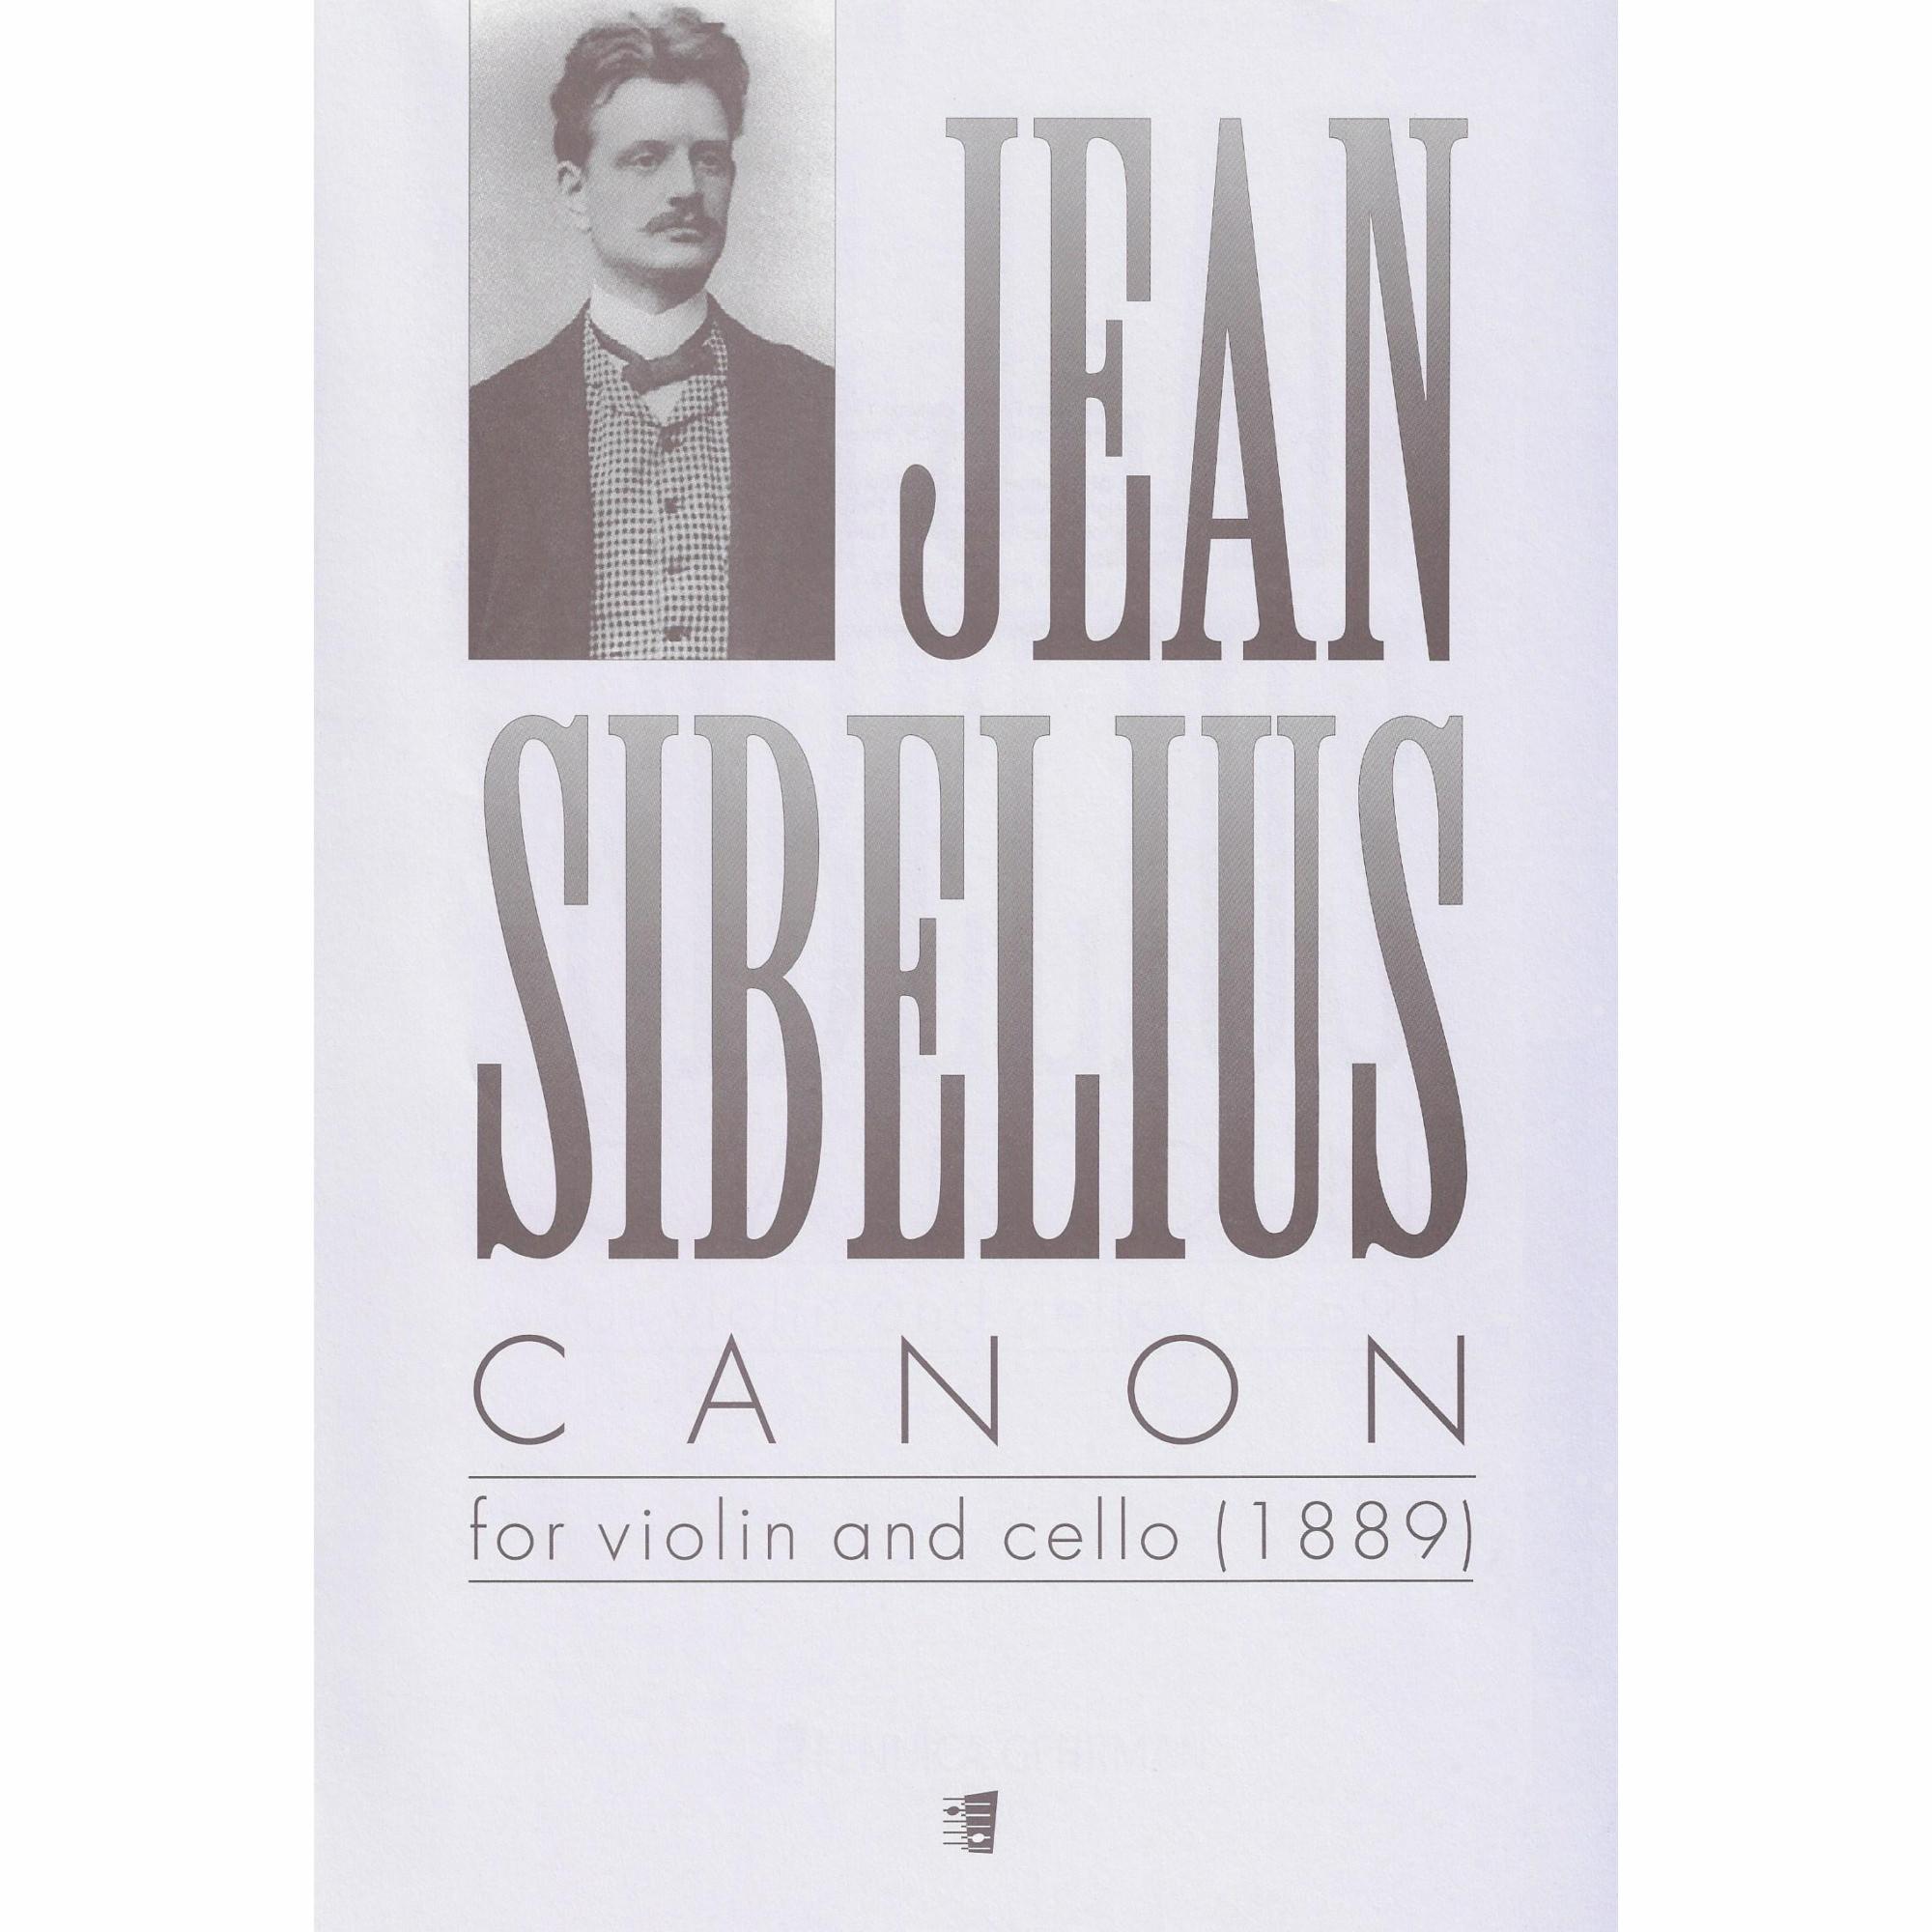 Sibelius -- Canon for Violin and Cello